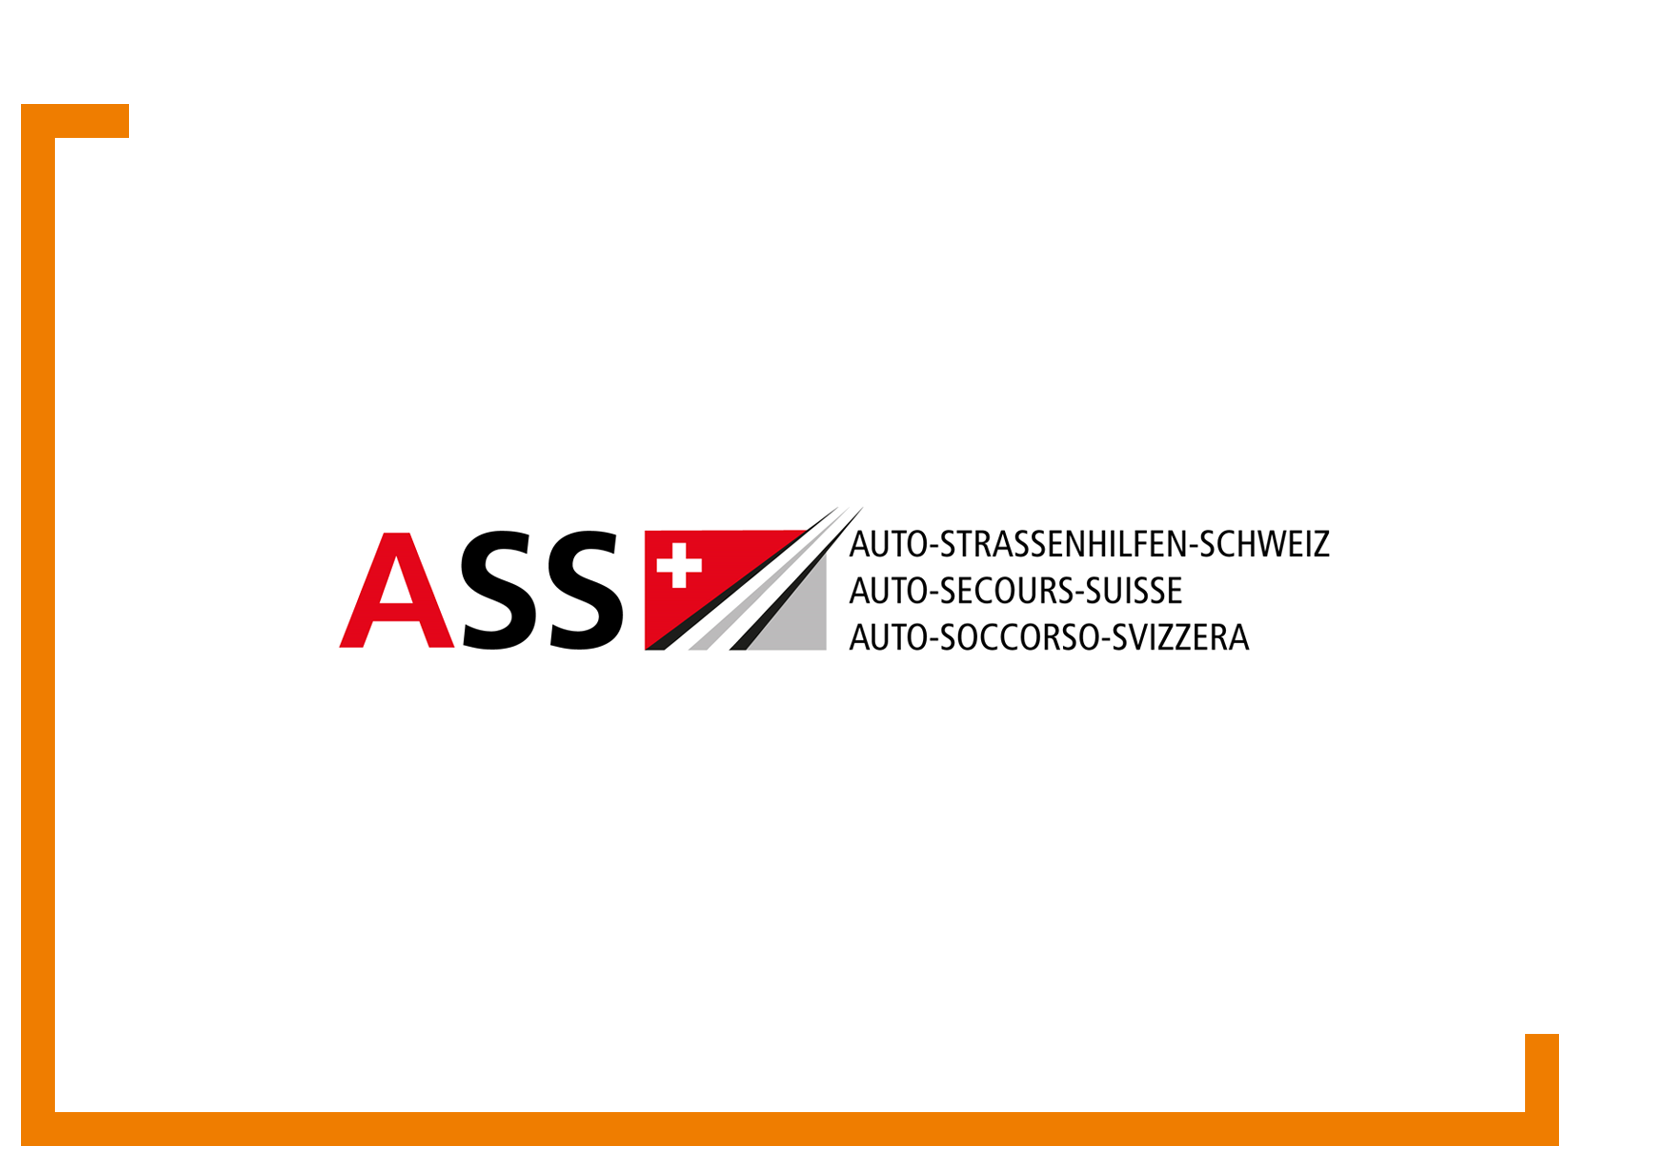 Association professionelle auto-secours-suisse